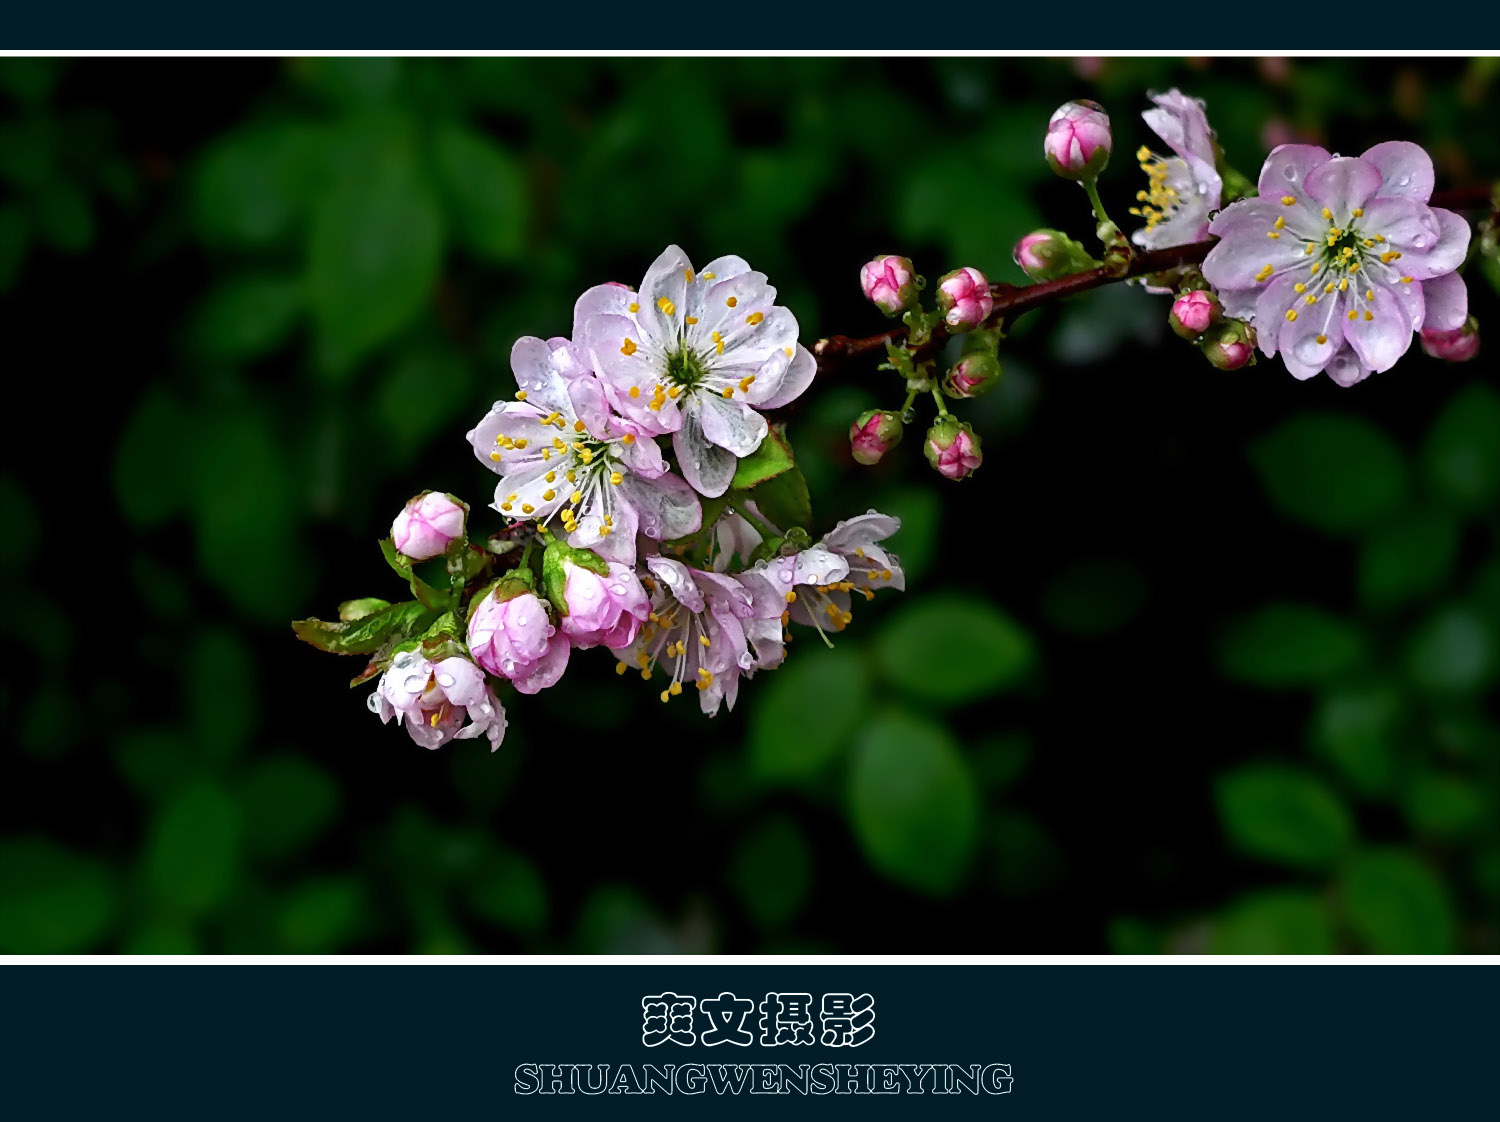 樱花 樱桃花 花 - Pixabay上的免费照片 - Pixabay